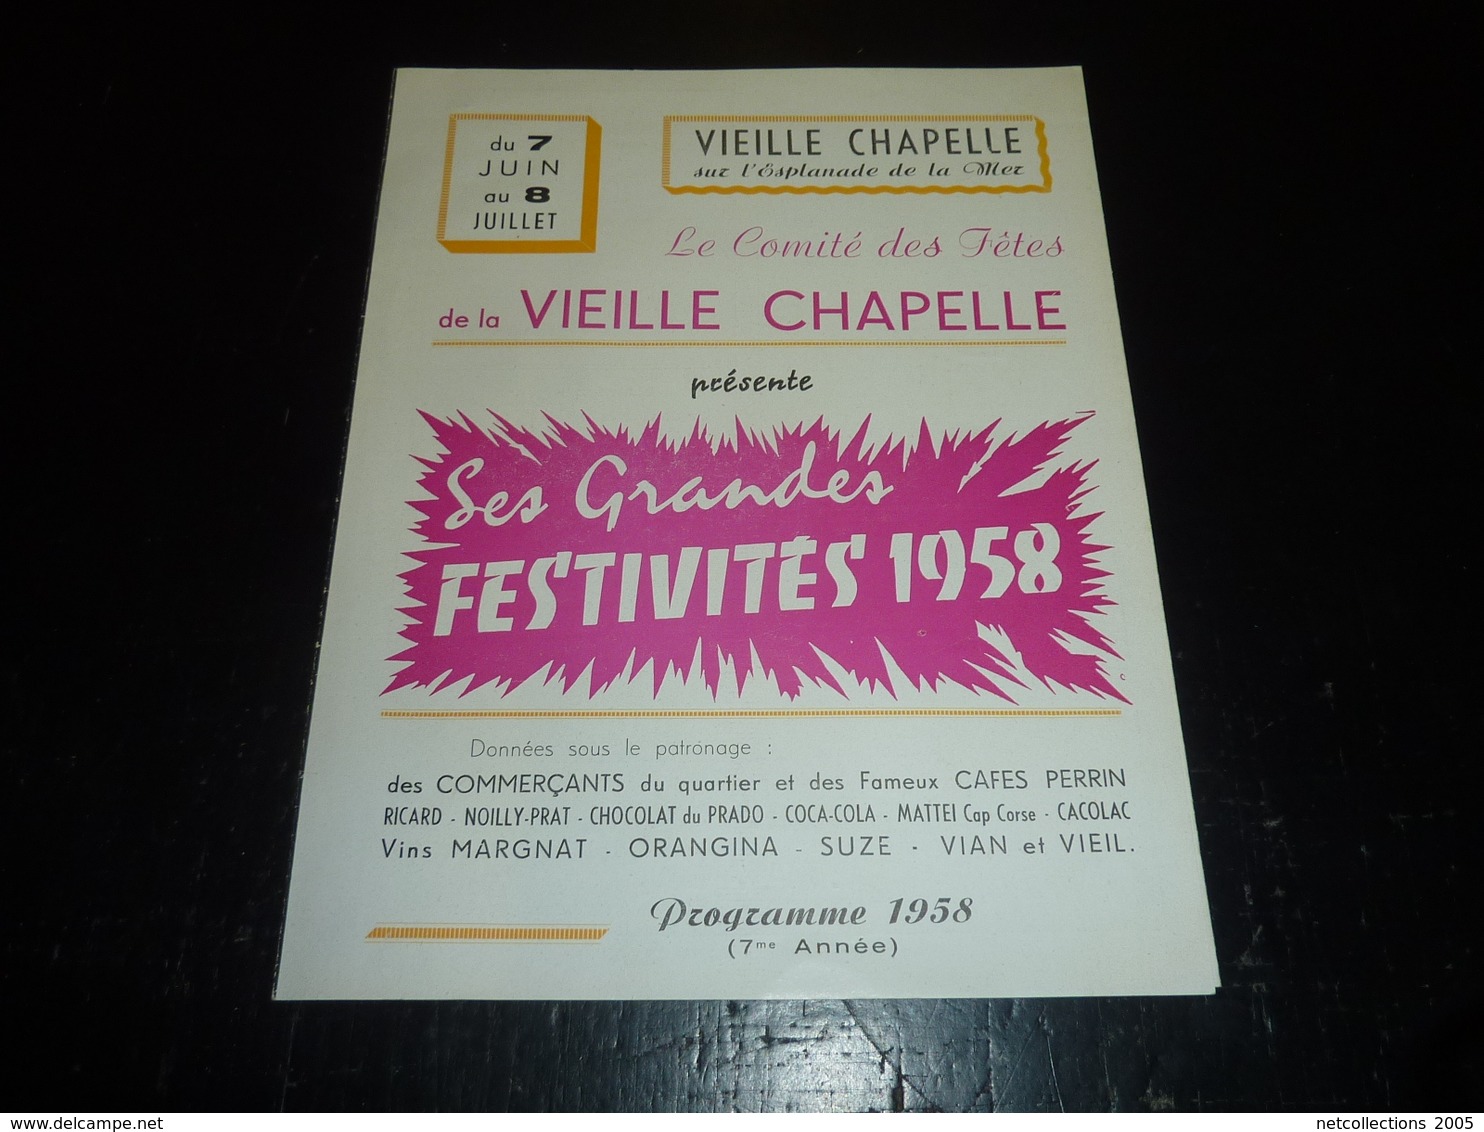 VIEILLE CHAPELLE SUR L'ESPLANADE DE LA MER FESTIVITES 1958 PROGRAMME/PUBLICITAIRE BELLE PUBLICITE CAFE PERRIN 1958 (AD) - Pubblicitari